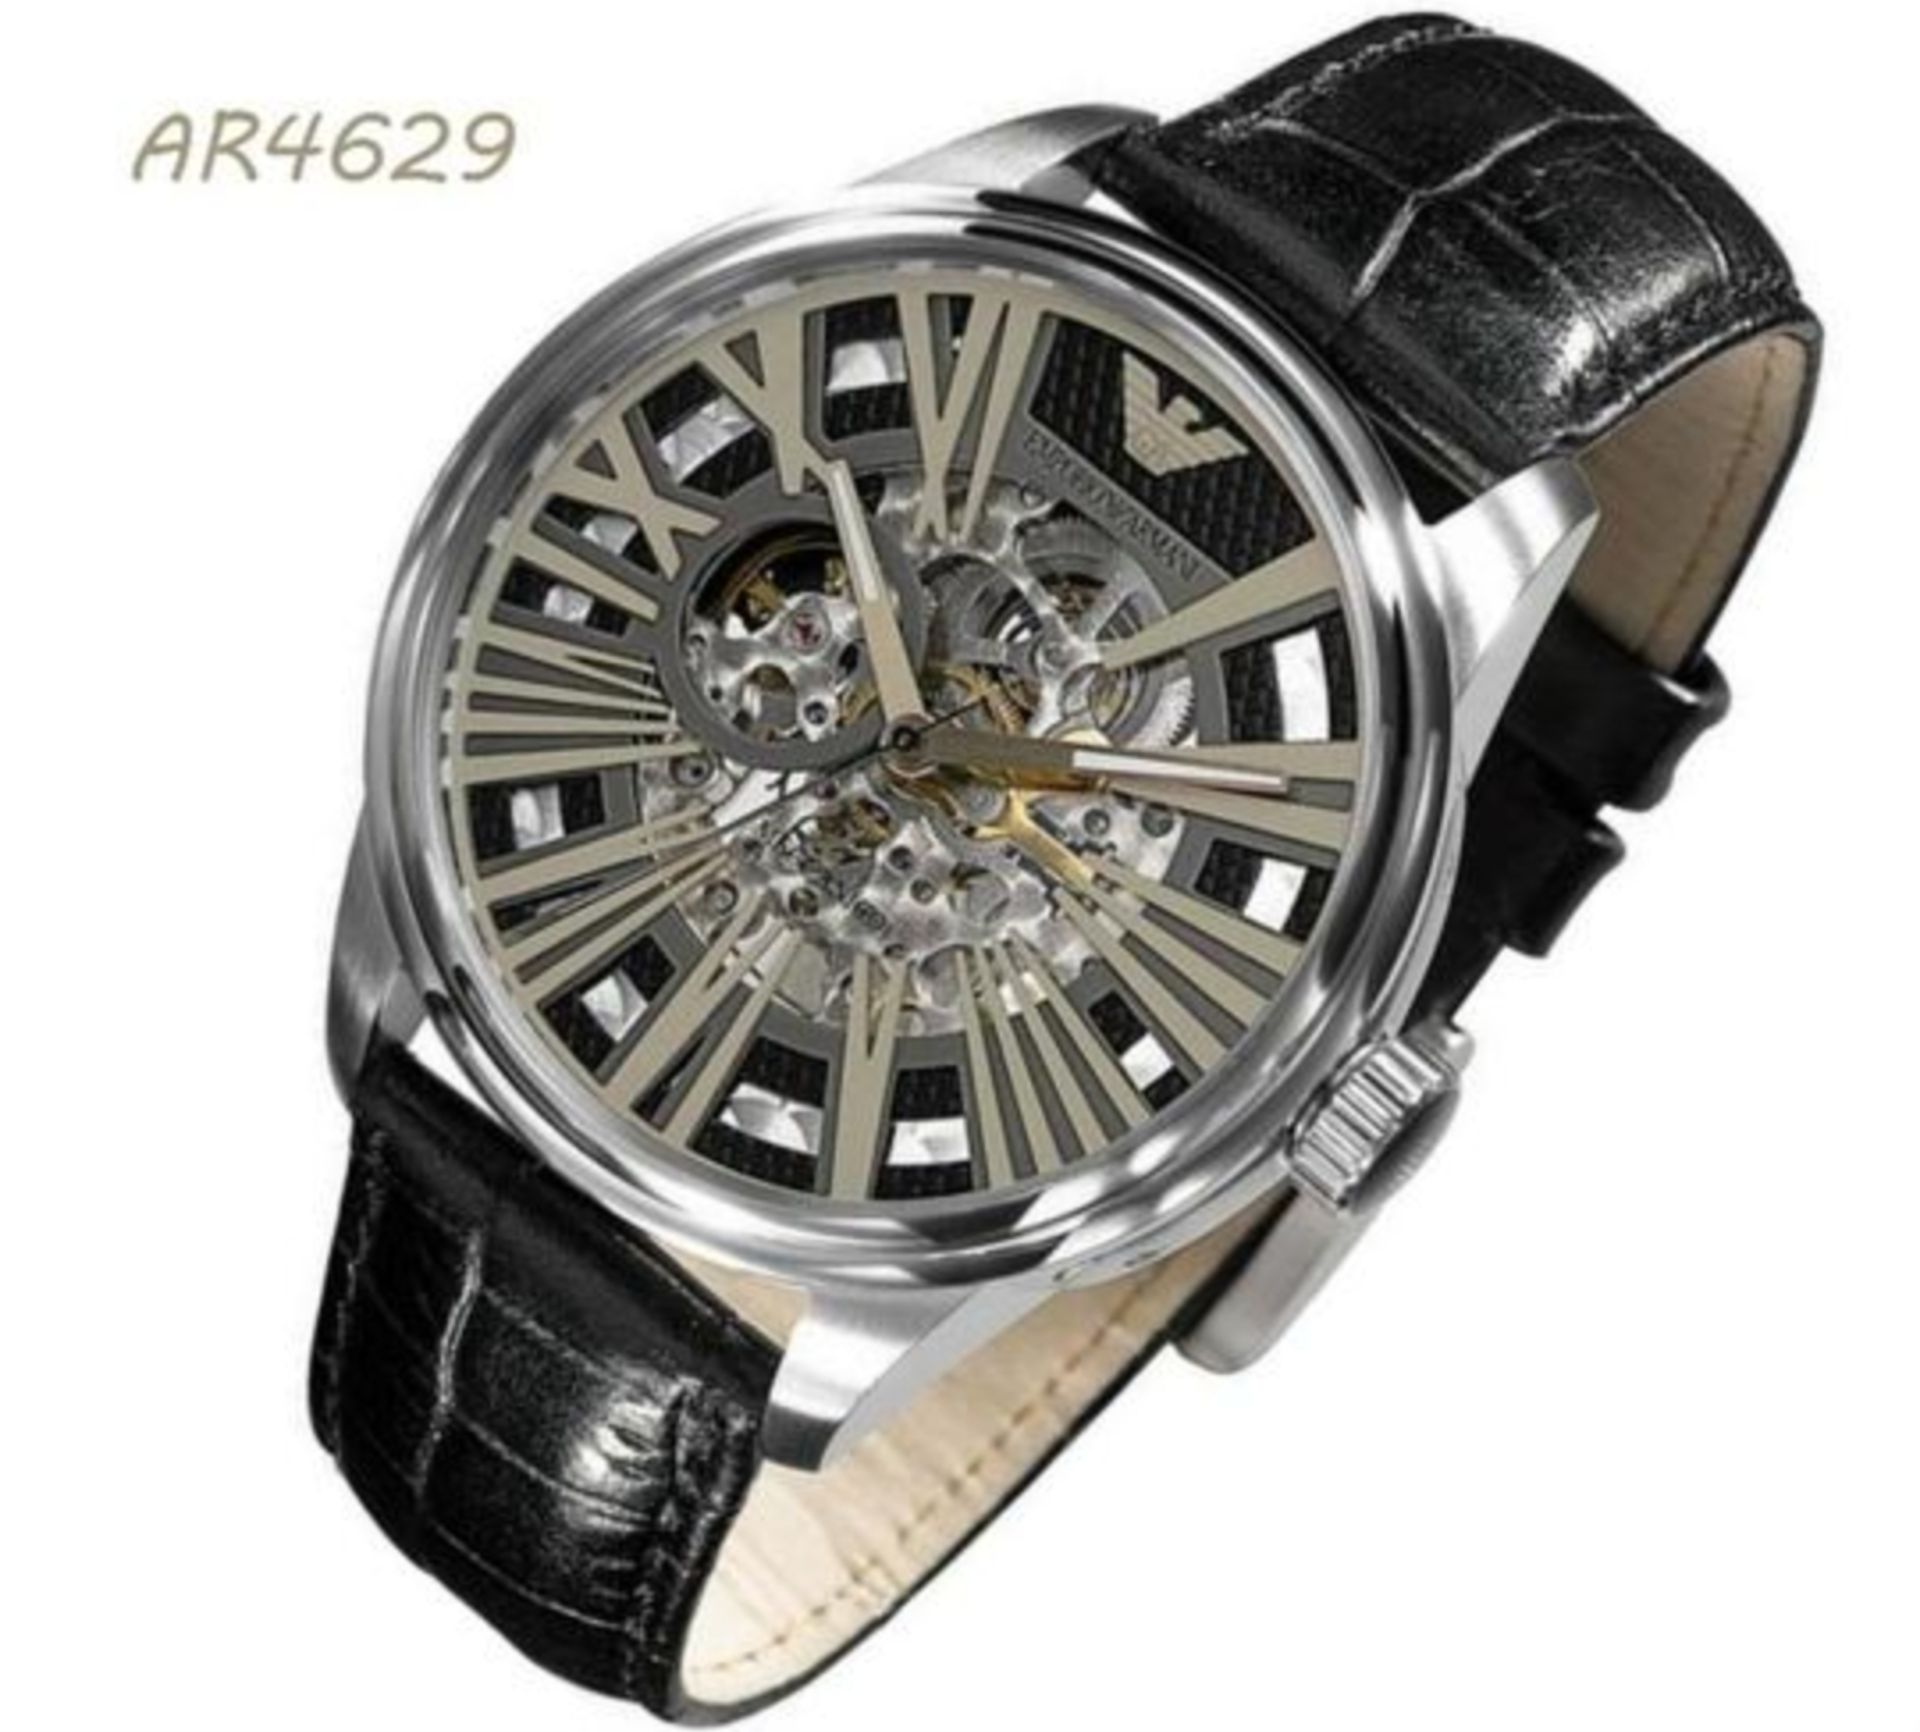 Emporio Armani AR4629 Men's Meccanico Black Leather Strap Watch - Image 6 of 8